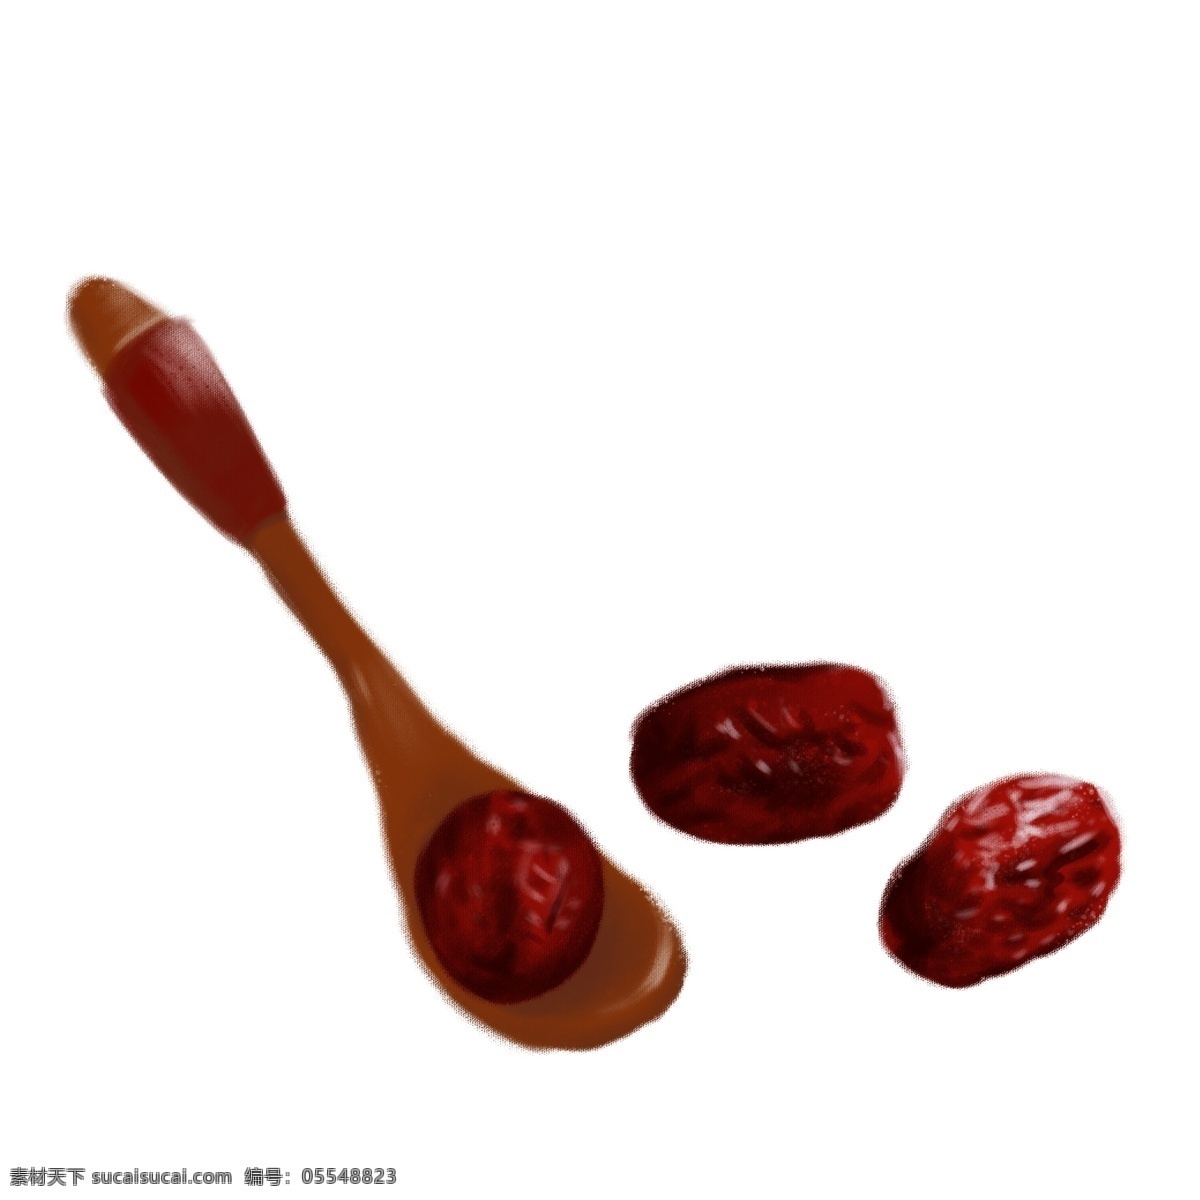 红枣 木头 勺子 食物 食品 美食 手绘 插画 木质 枣 大枣 大红枣 甜食 补品 滋补